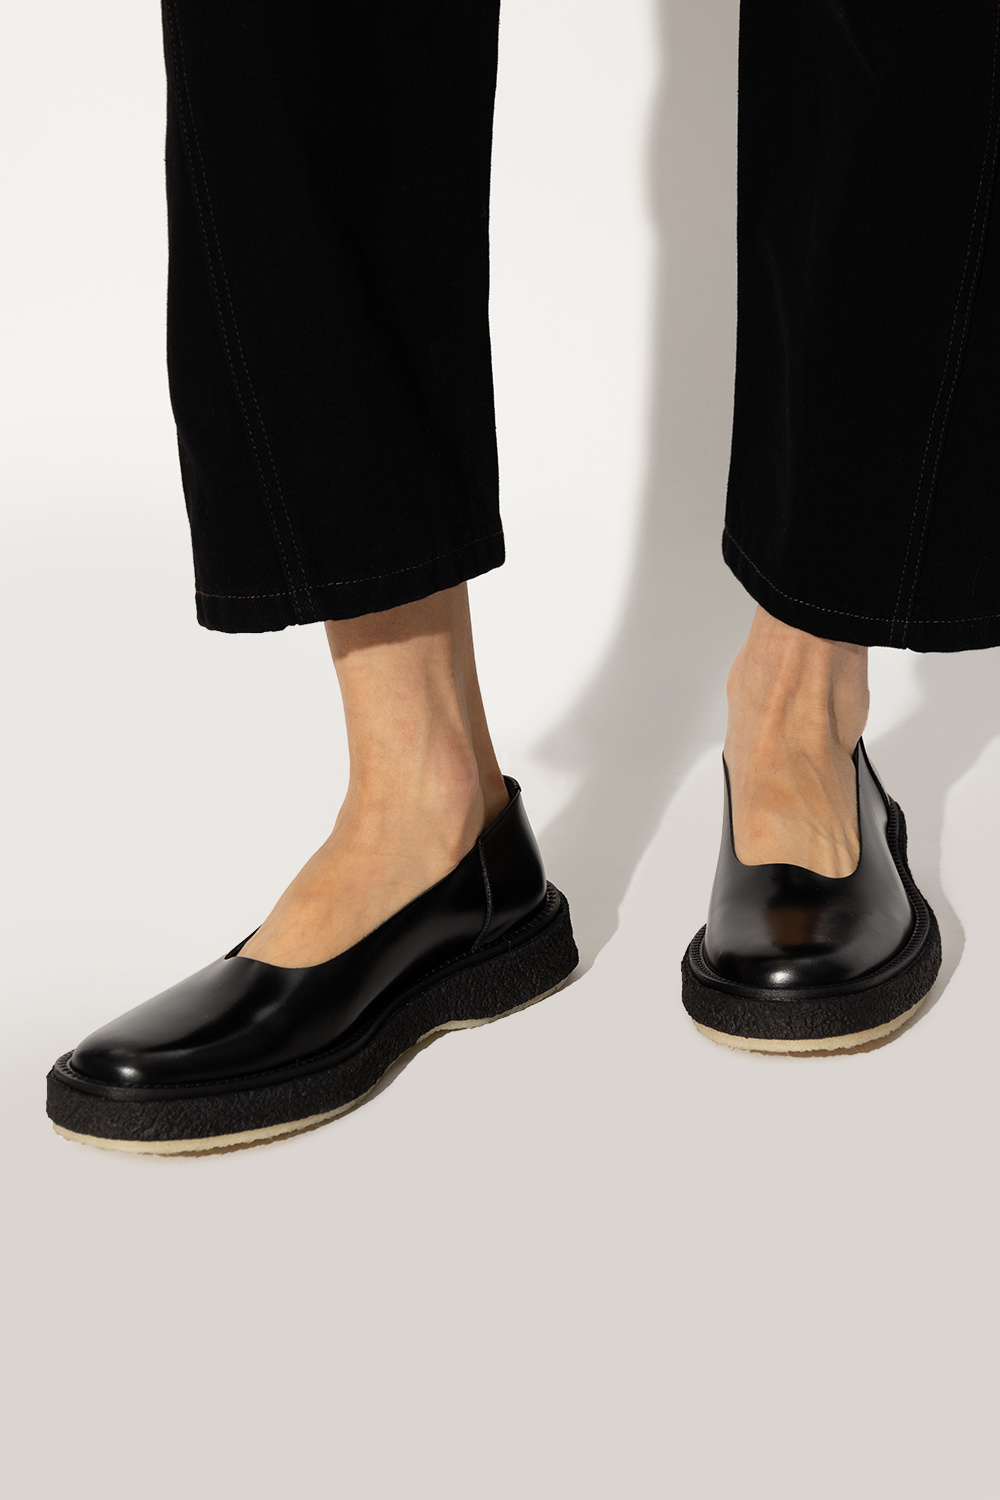 Adieu Paris 'Type 176' leather shoes | Women's Shoes | Vitkac